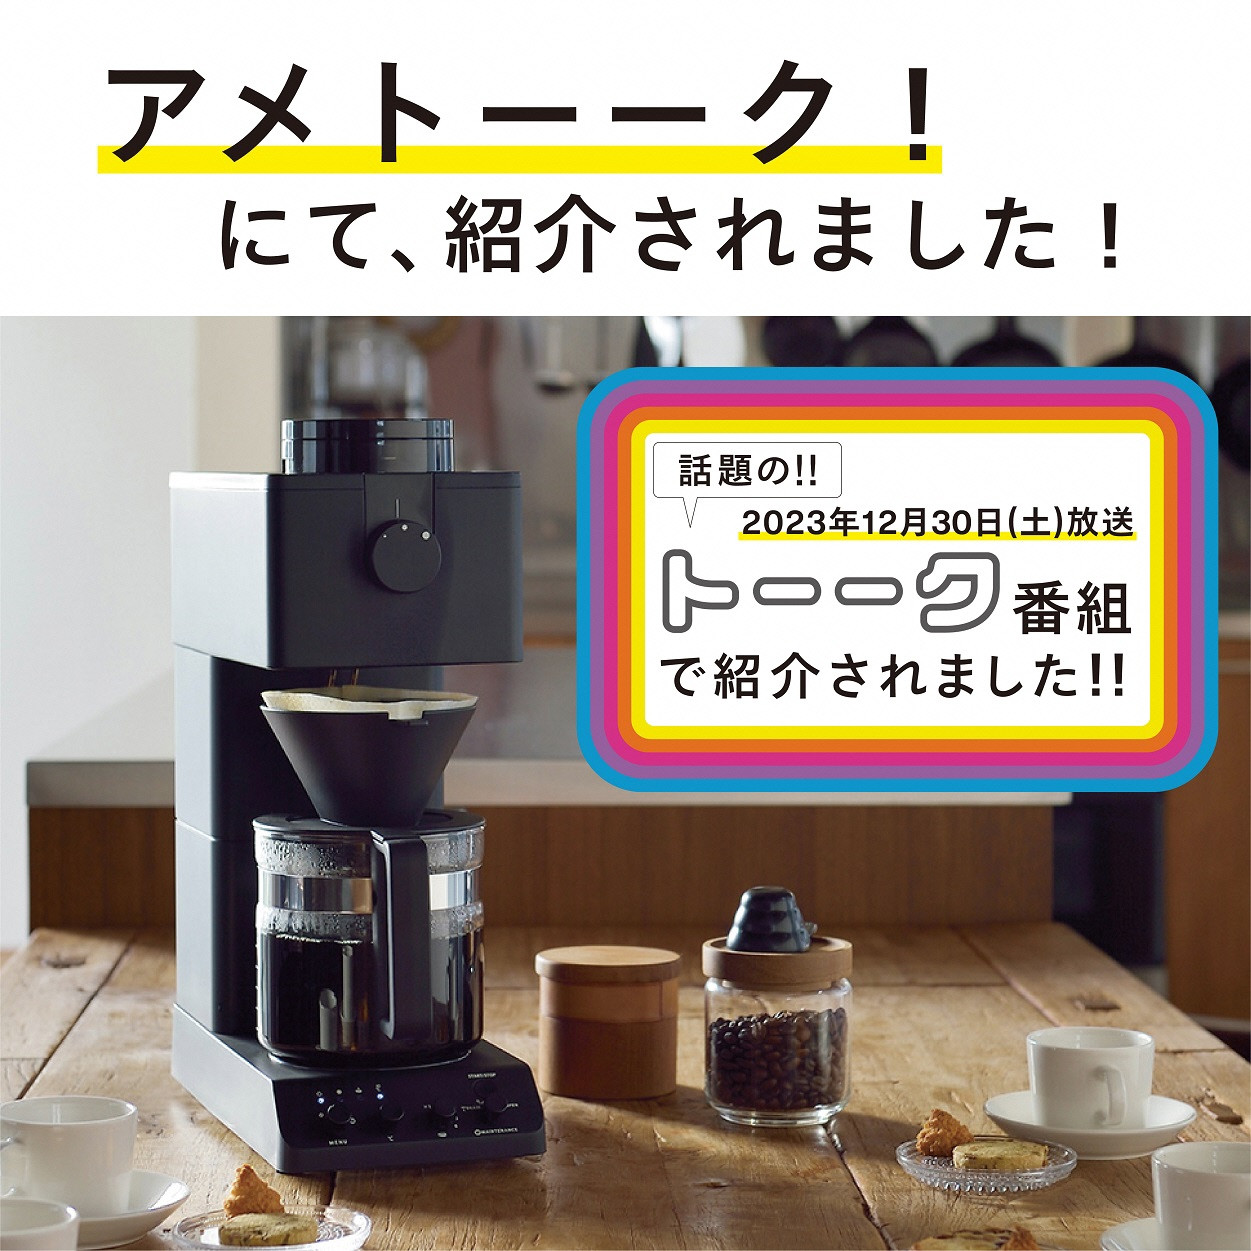 ツインバード 全自動コーヒーメーカー 6カップ ブラック (CM-D465B)【 ミル付き 6杯用 日本製 家電 コーヒーメーカー 】